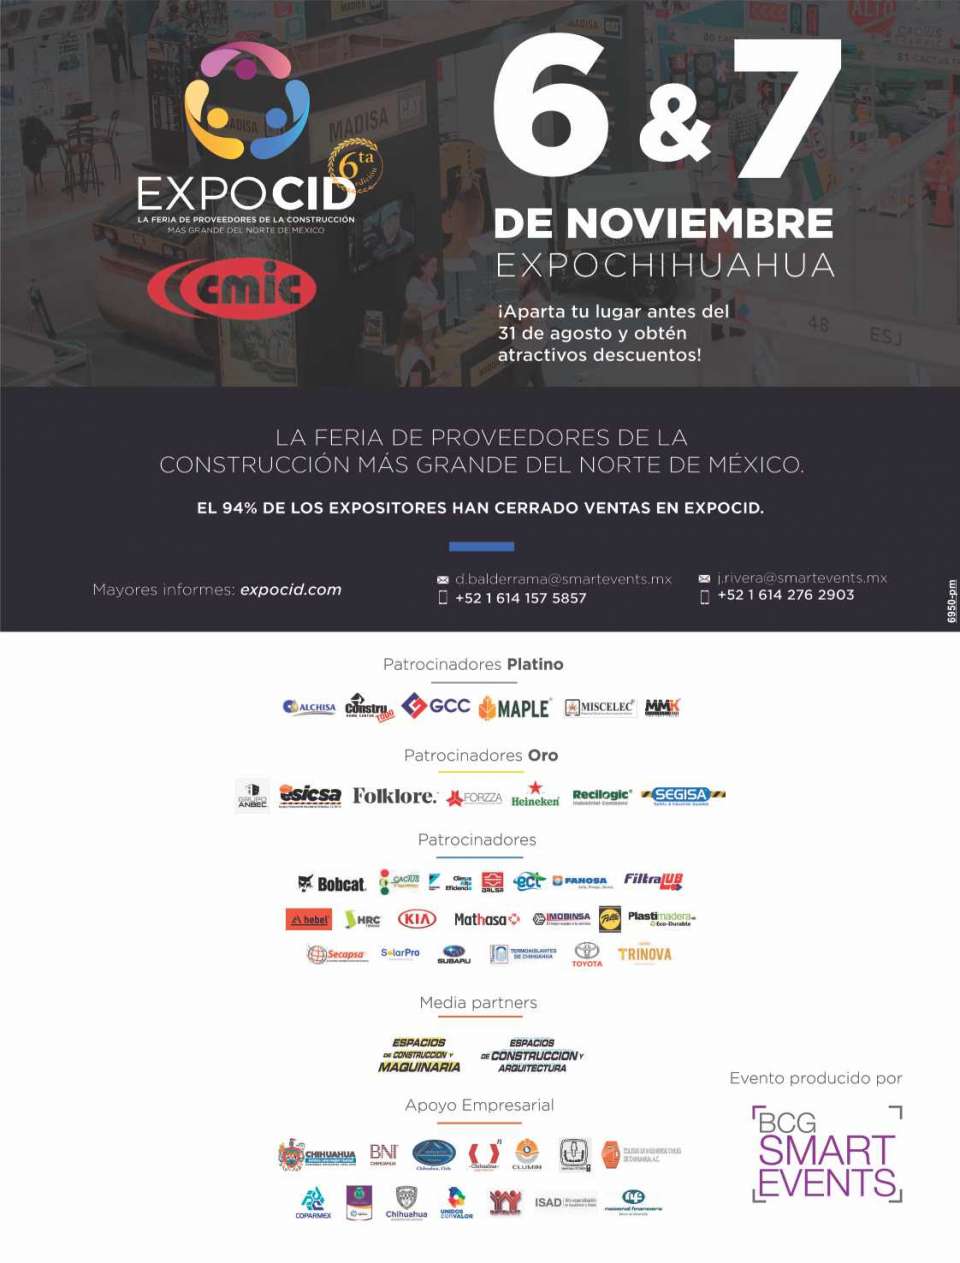 EXPOCID - La Feria de Proveedores de la Construccion mas Grande del Norte de Mexico, del 6 al 7 de Noviembre 2019 en ExpoChihuahua.